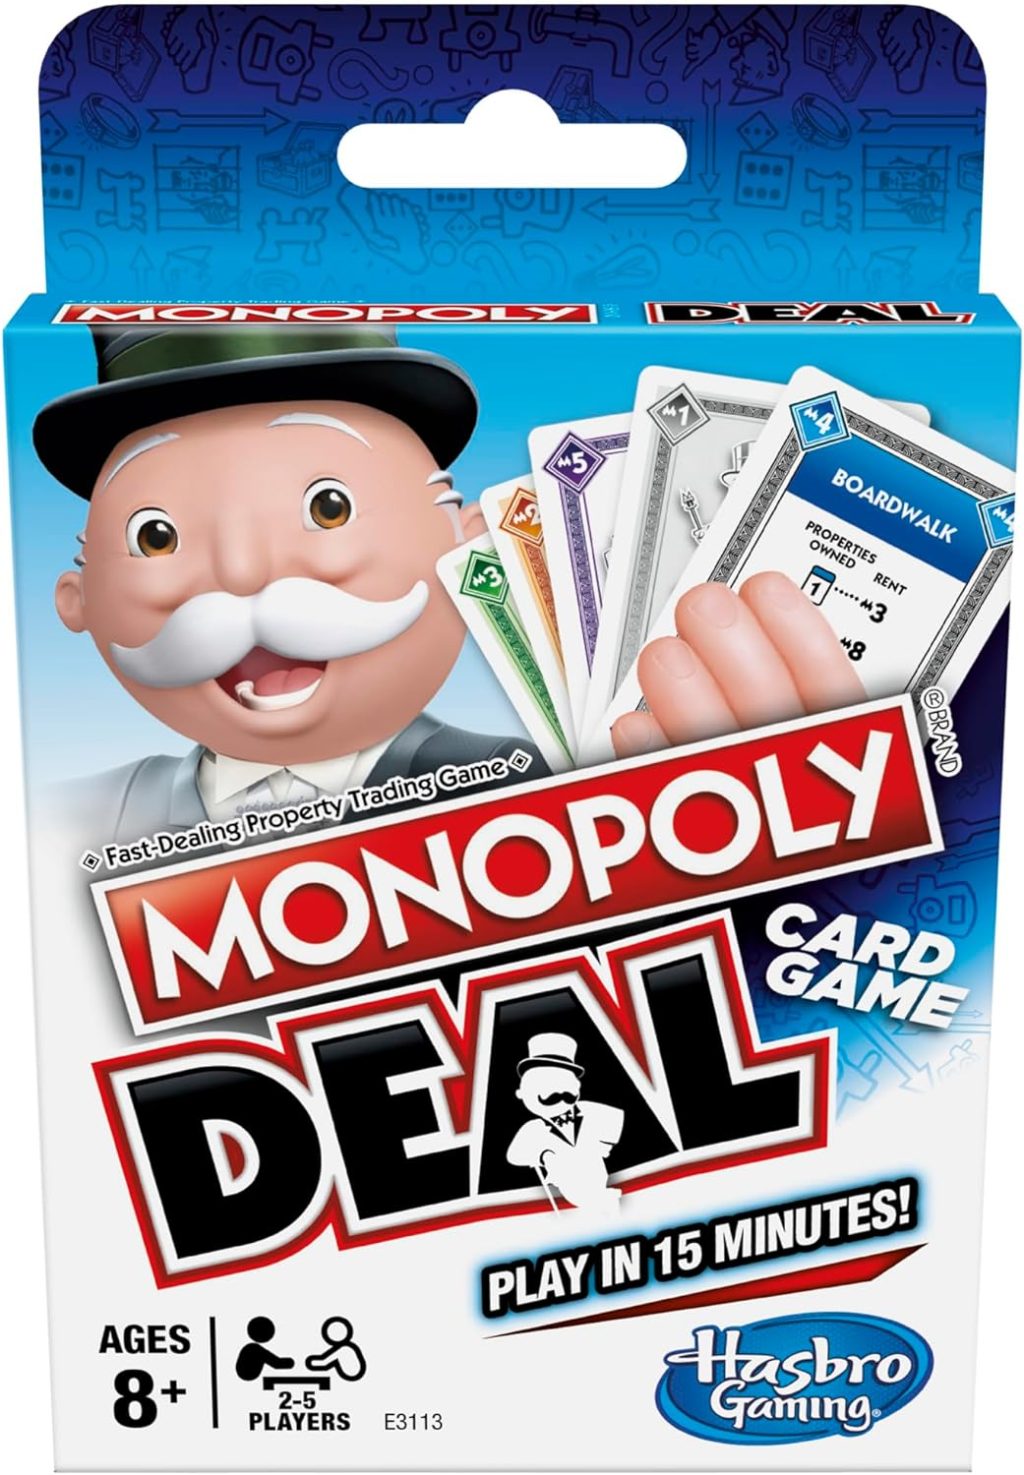 A Monopoly Deal deck